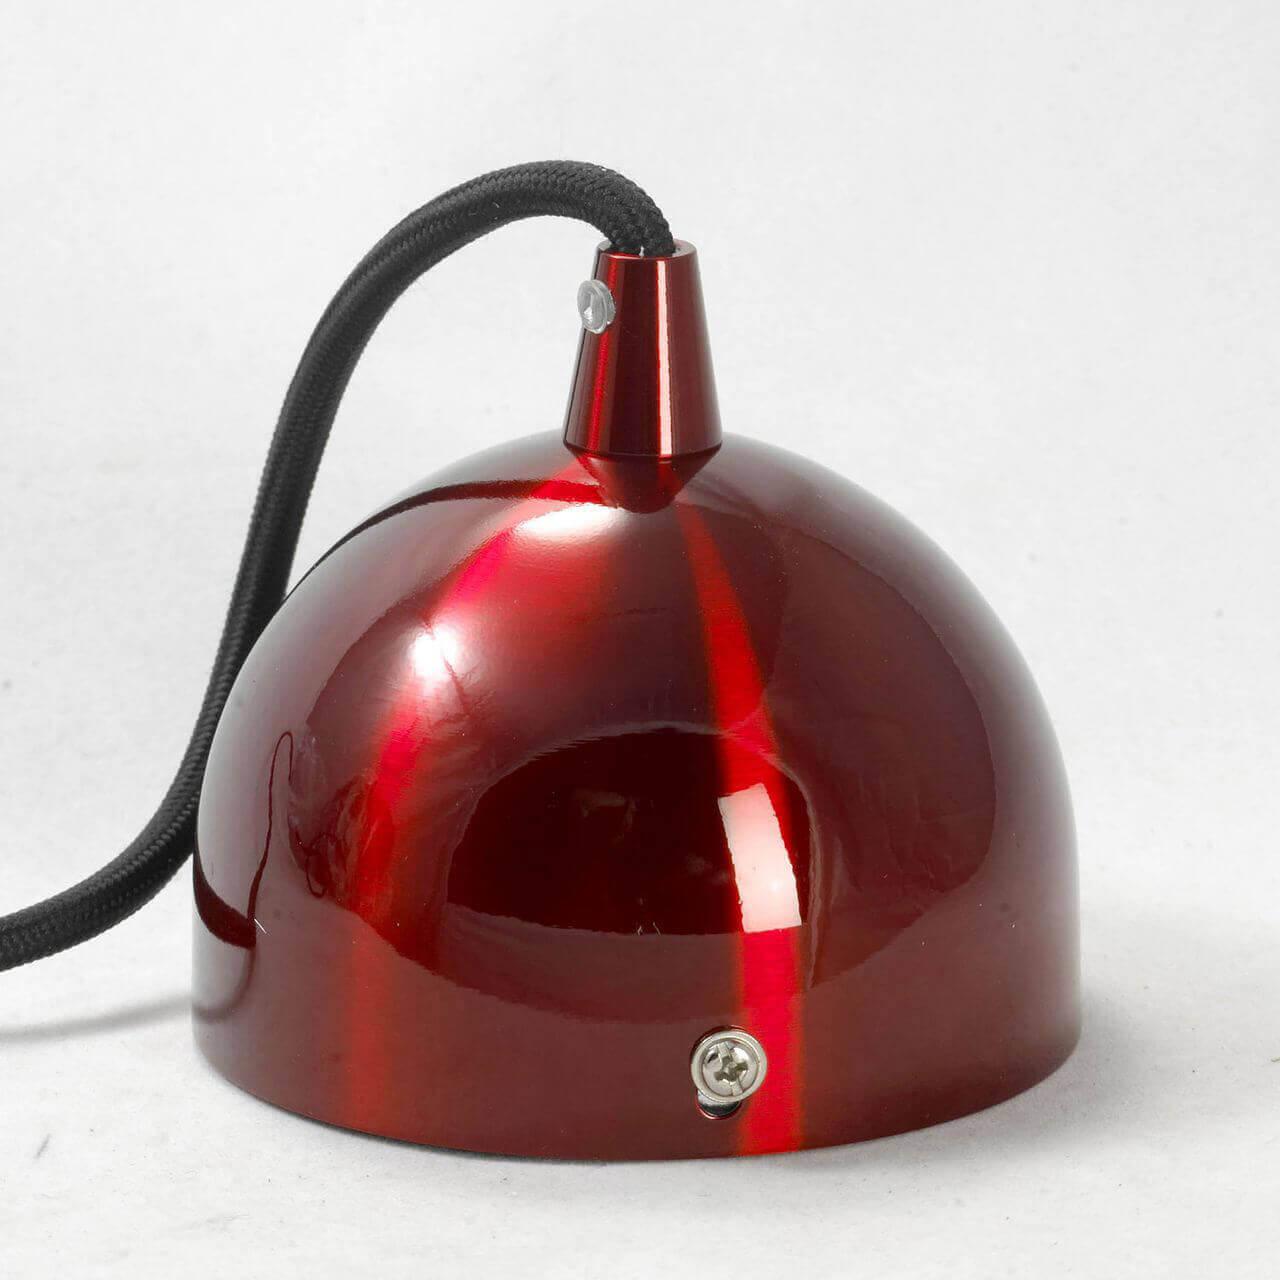 подвесной светильник lussole loft saratoga grlsp-9656